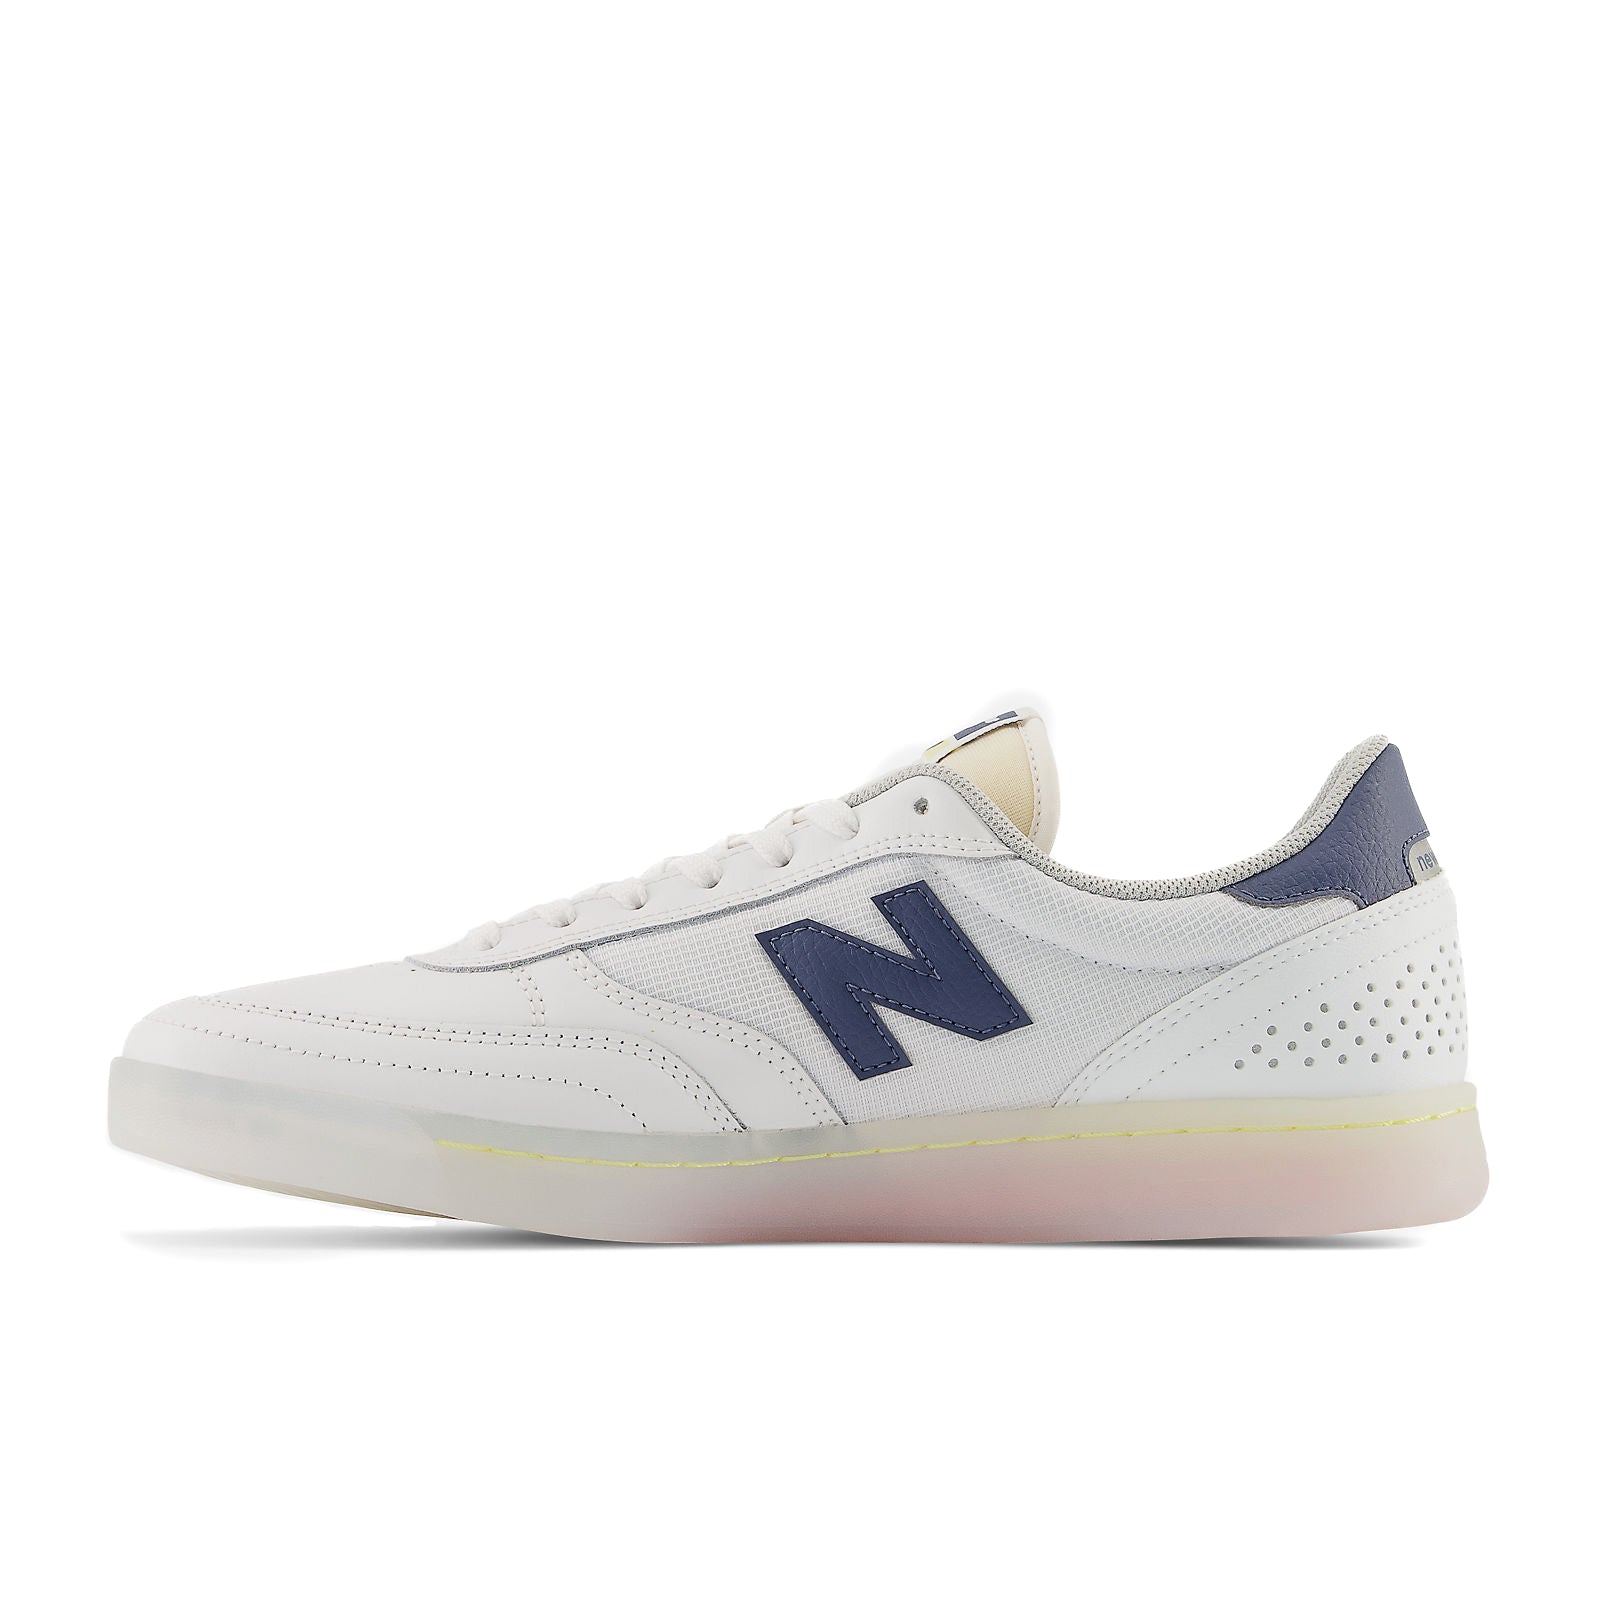 NB Numeric 440 - White